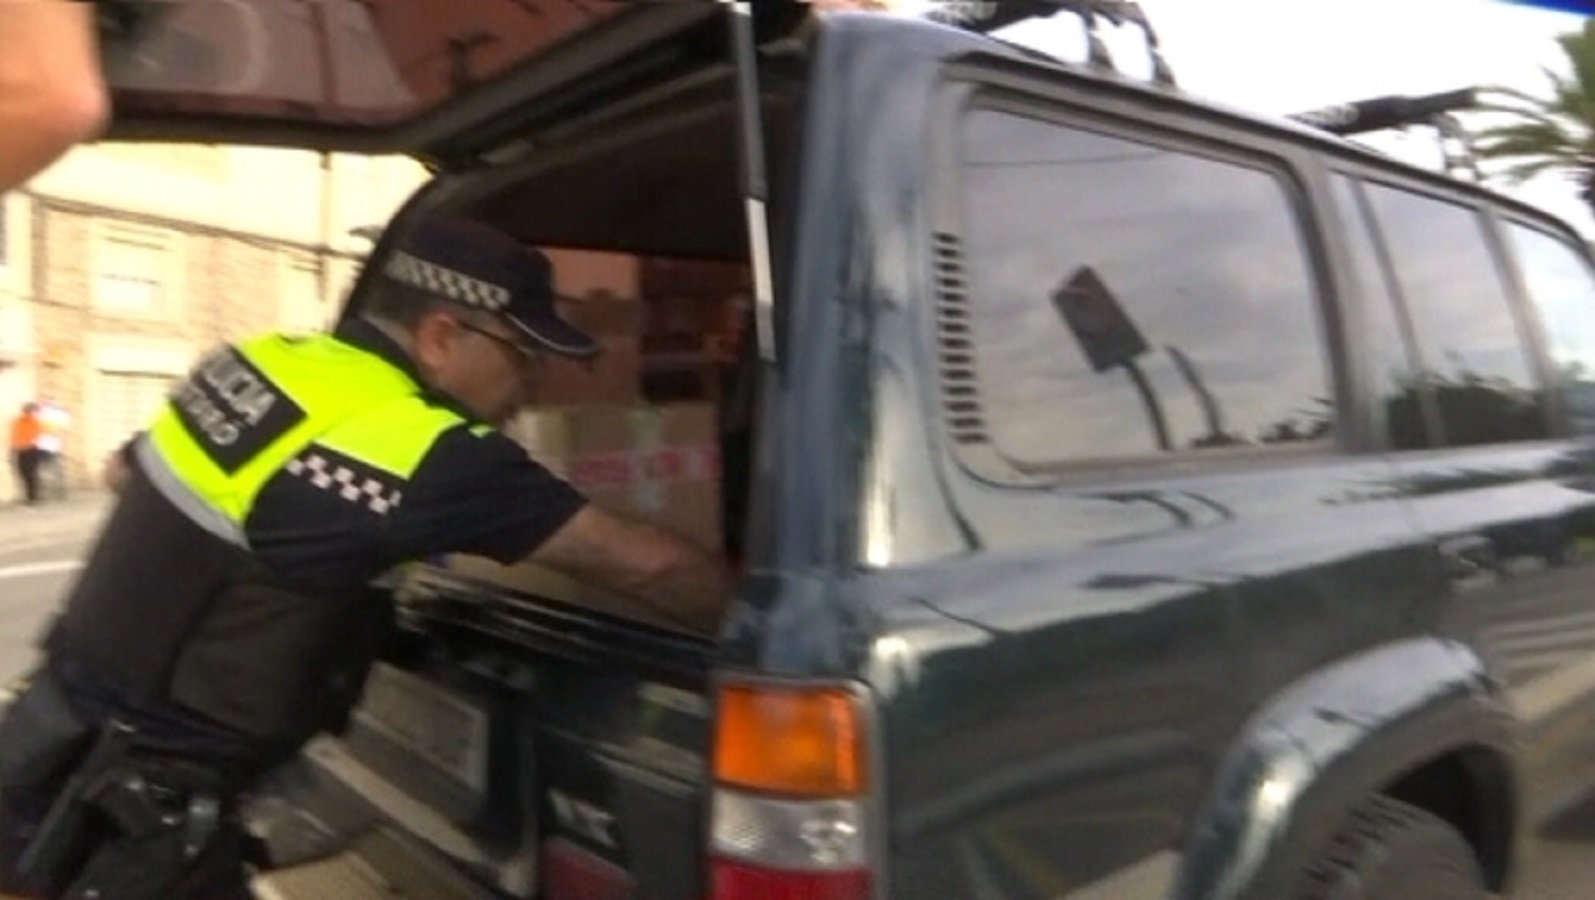 La policia de Mataró buscava "objectes contundents" als cotxes